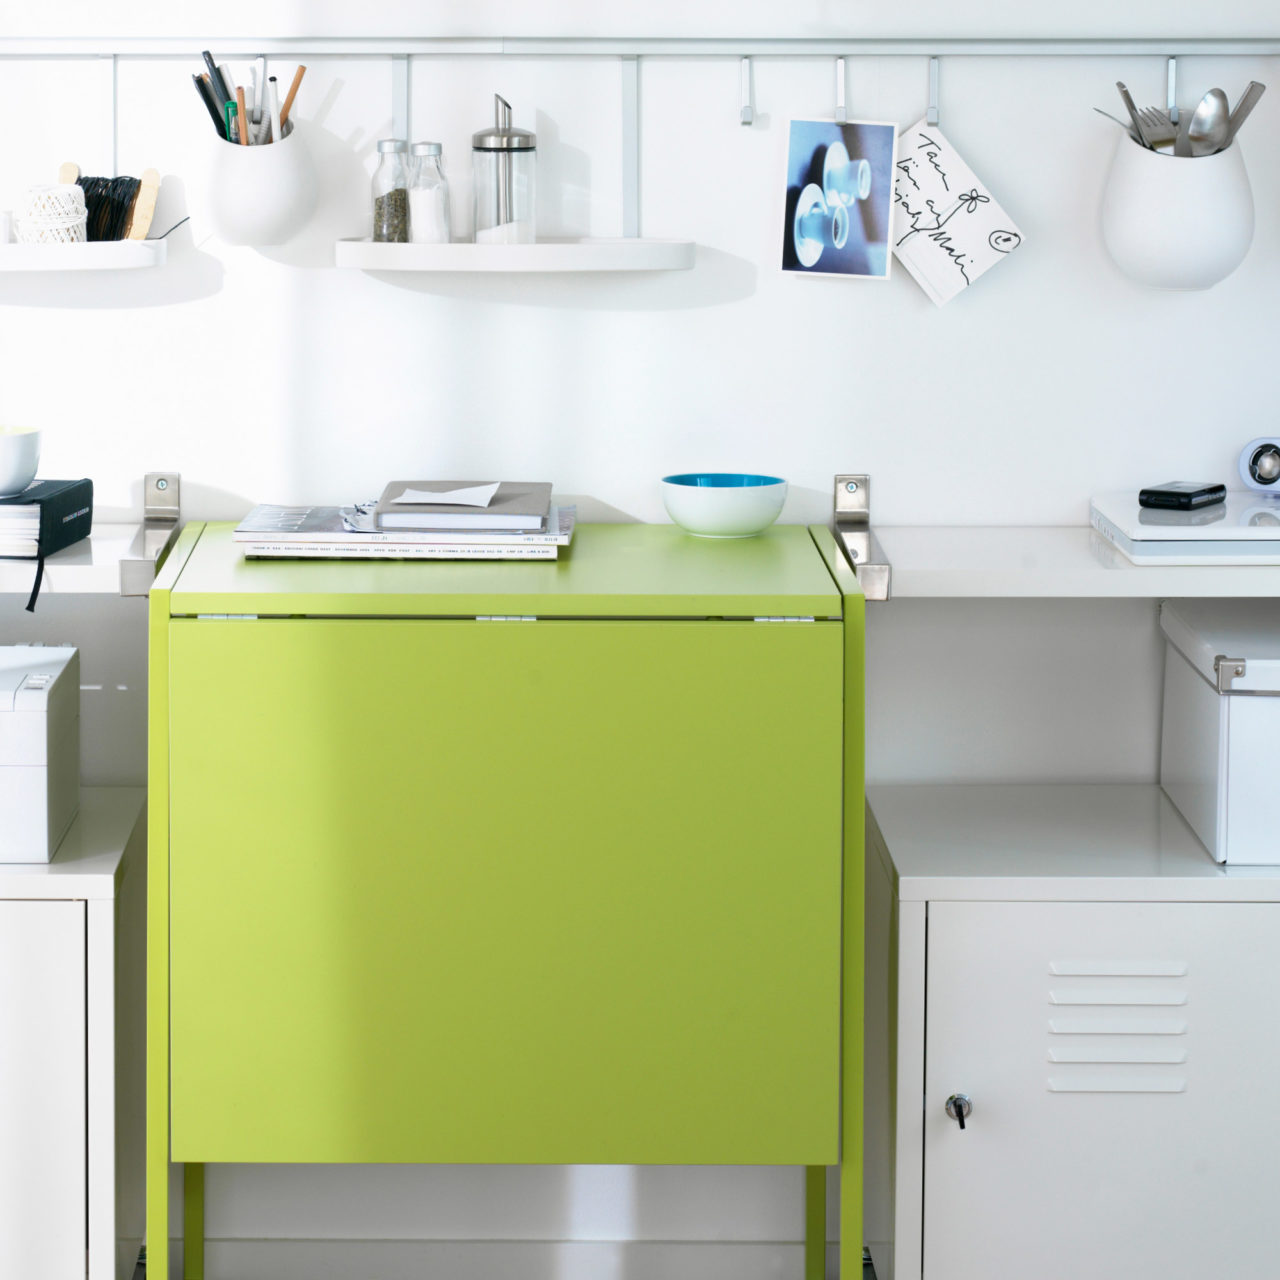 Pan de mur blanc, table à rabat citron vert entourée d’étagères, placards métalliques et petit rangement blanc.